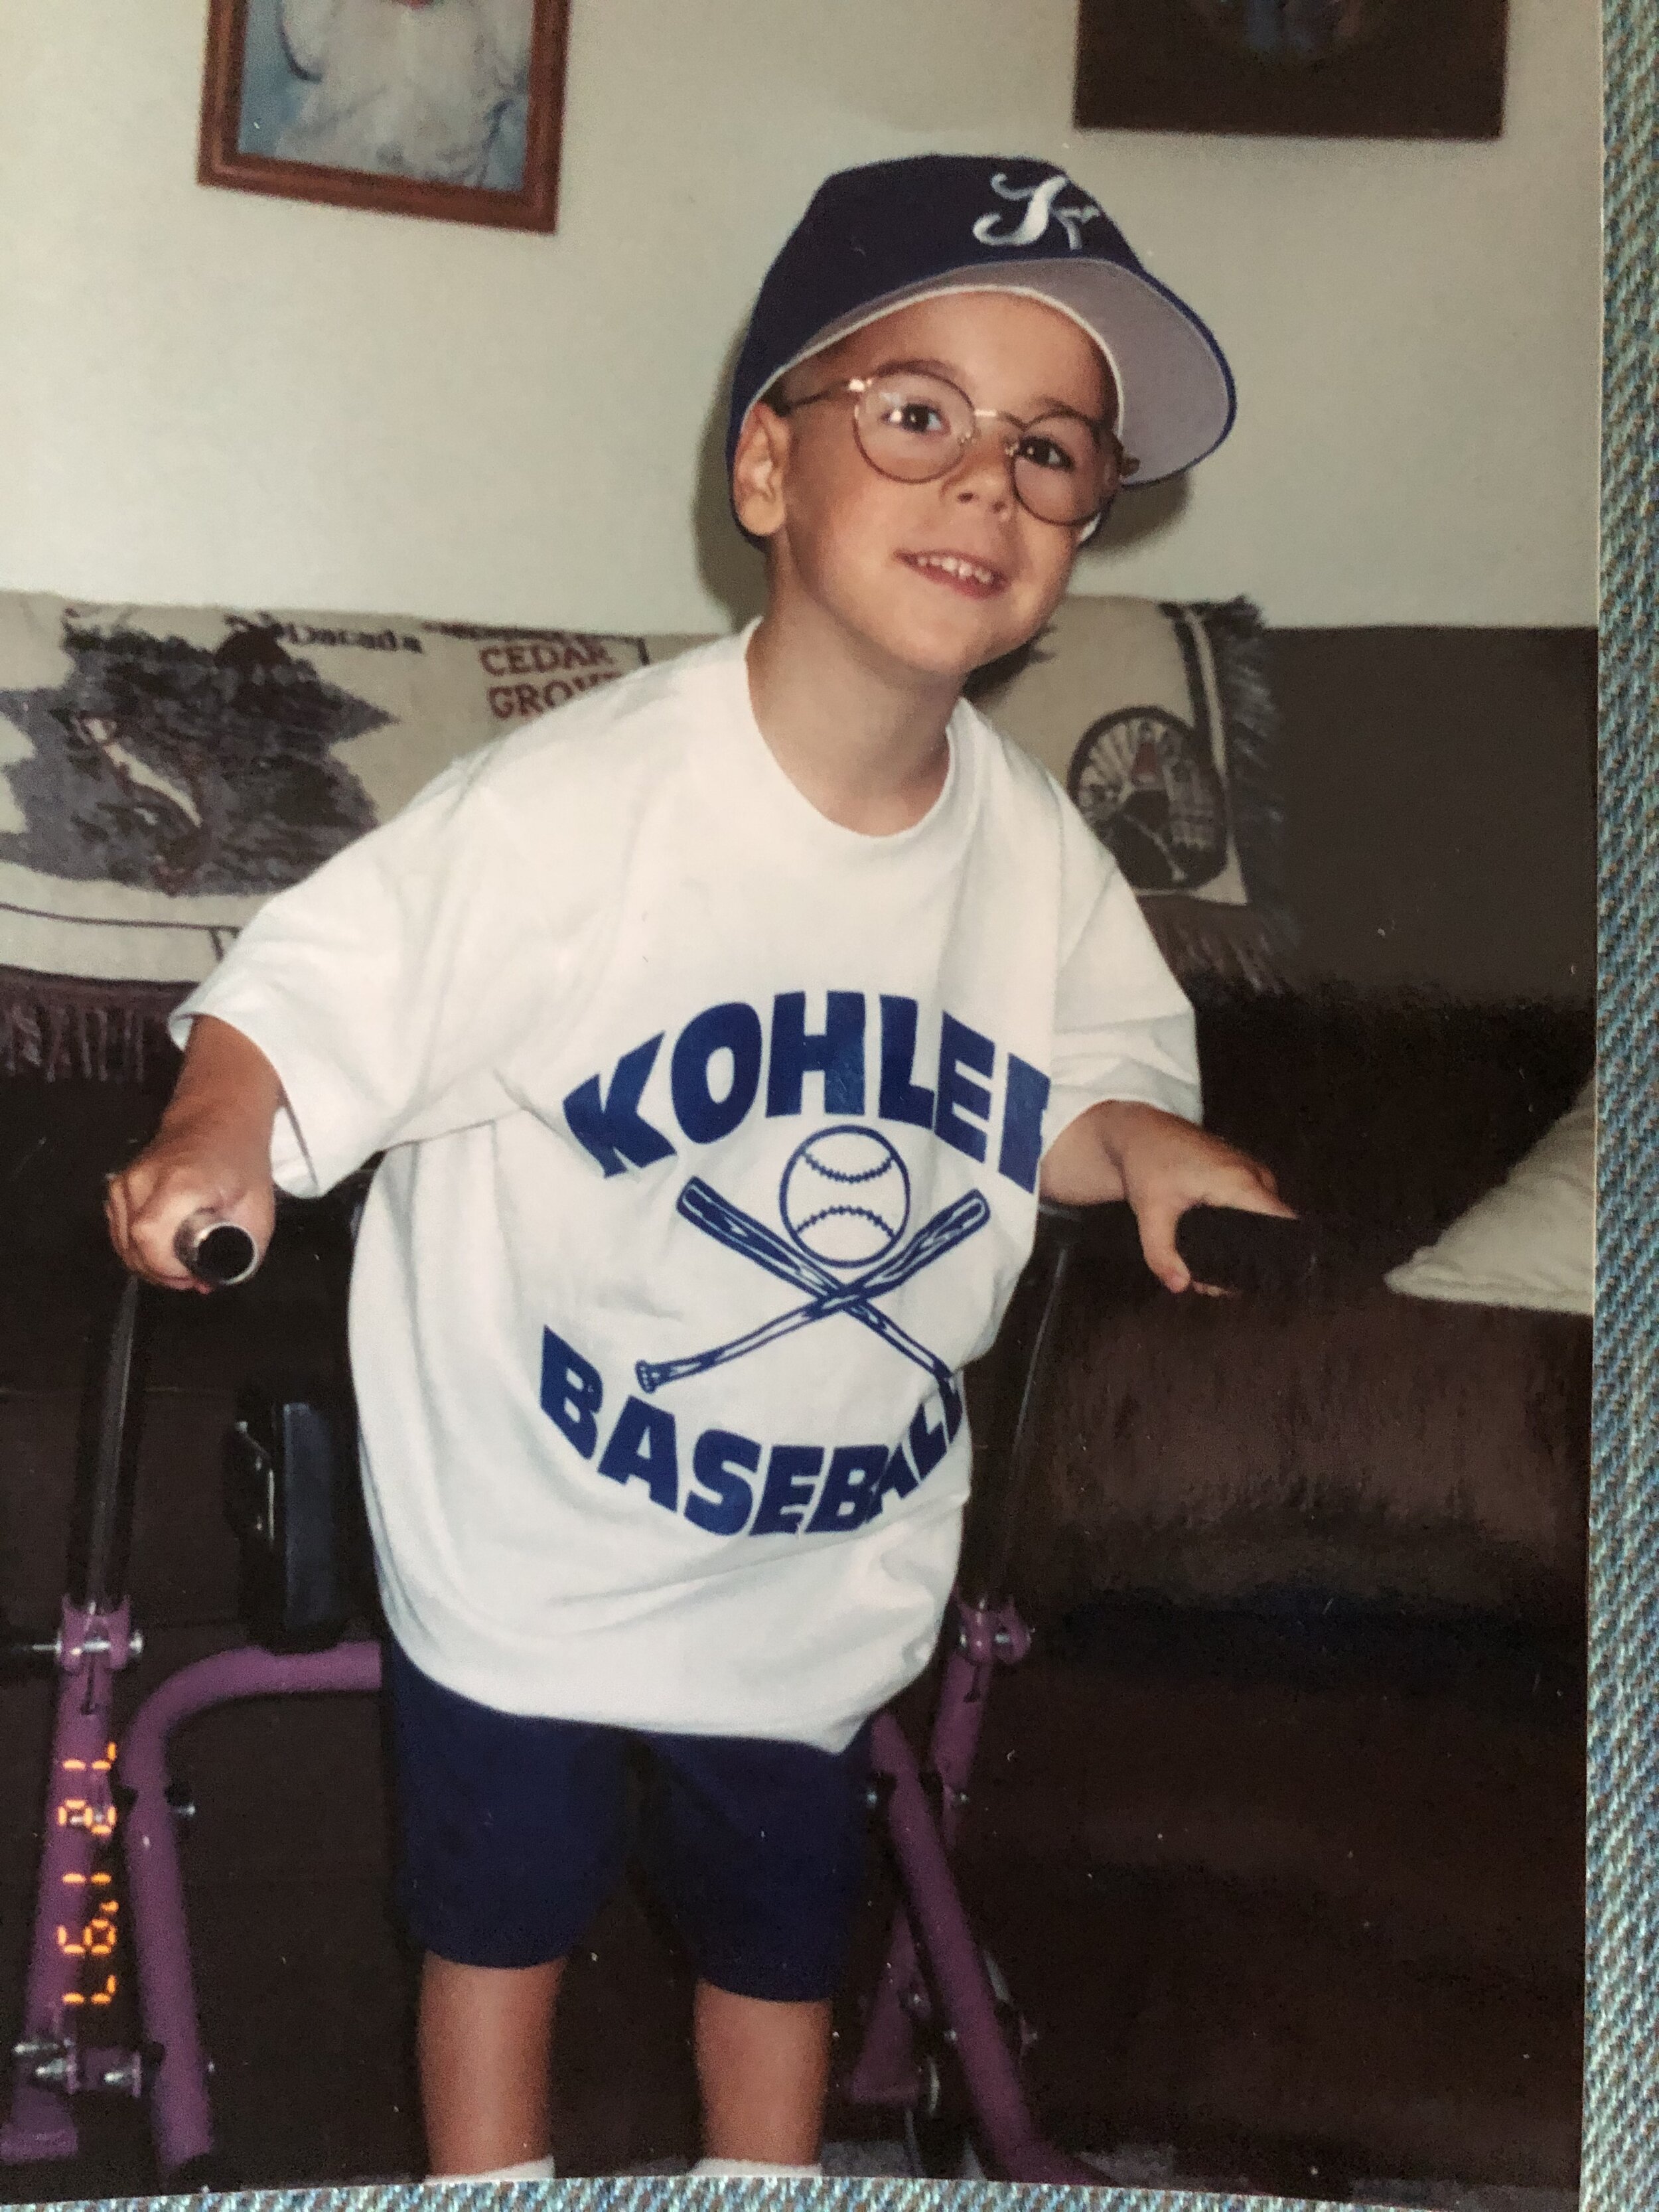 Youngest Kohler Baseball Manager.jpg